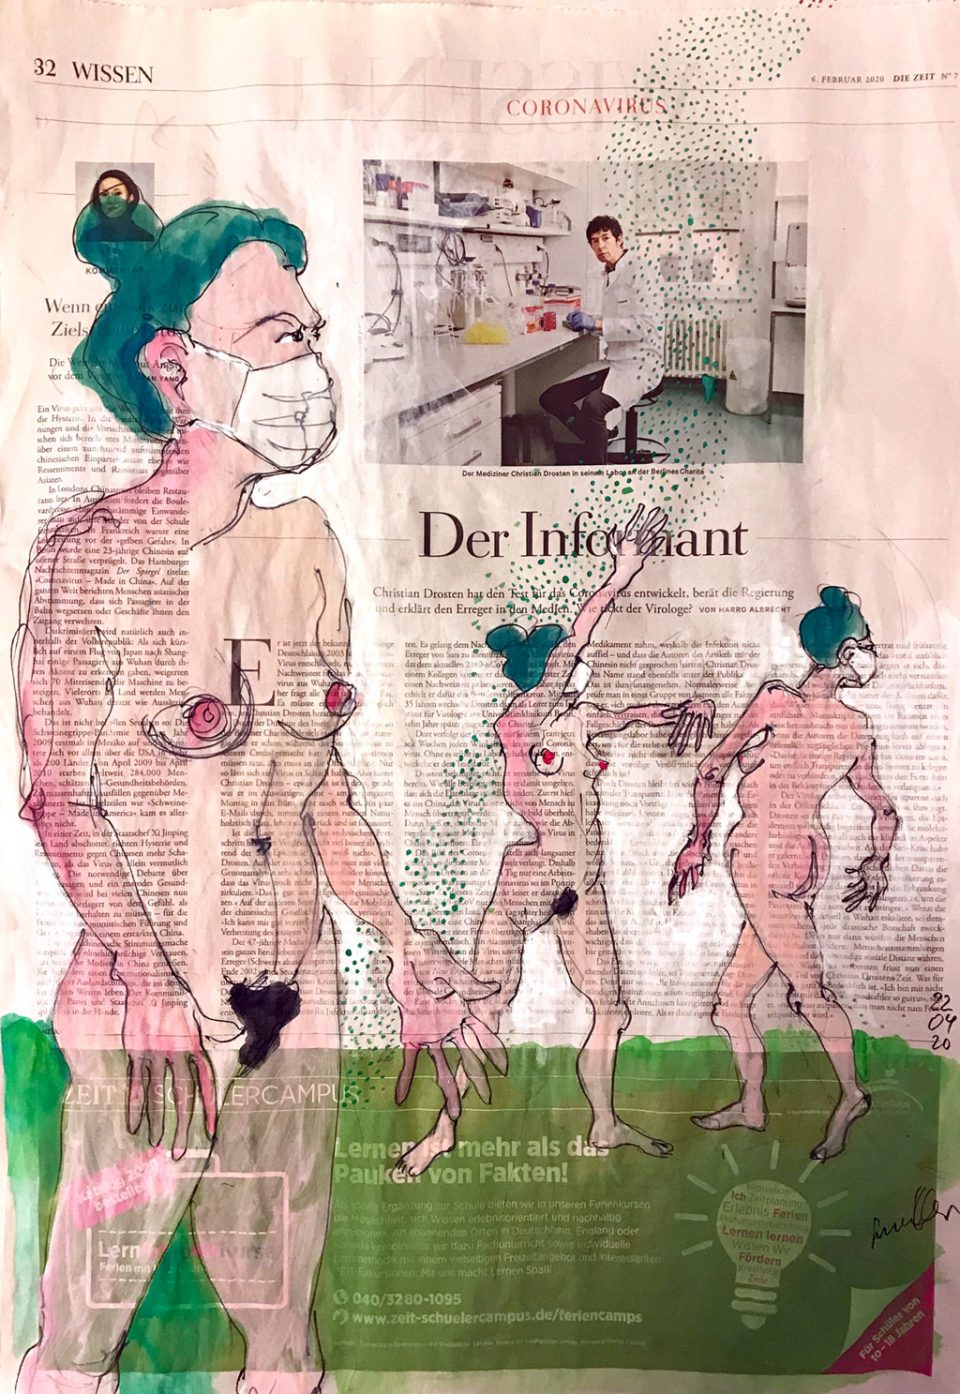 Der Informant – figürliche Zeichnung auf ganzer Zeitungsseite 40 x 56 cm